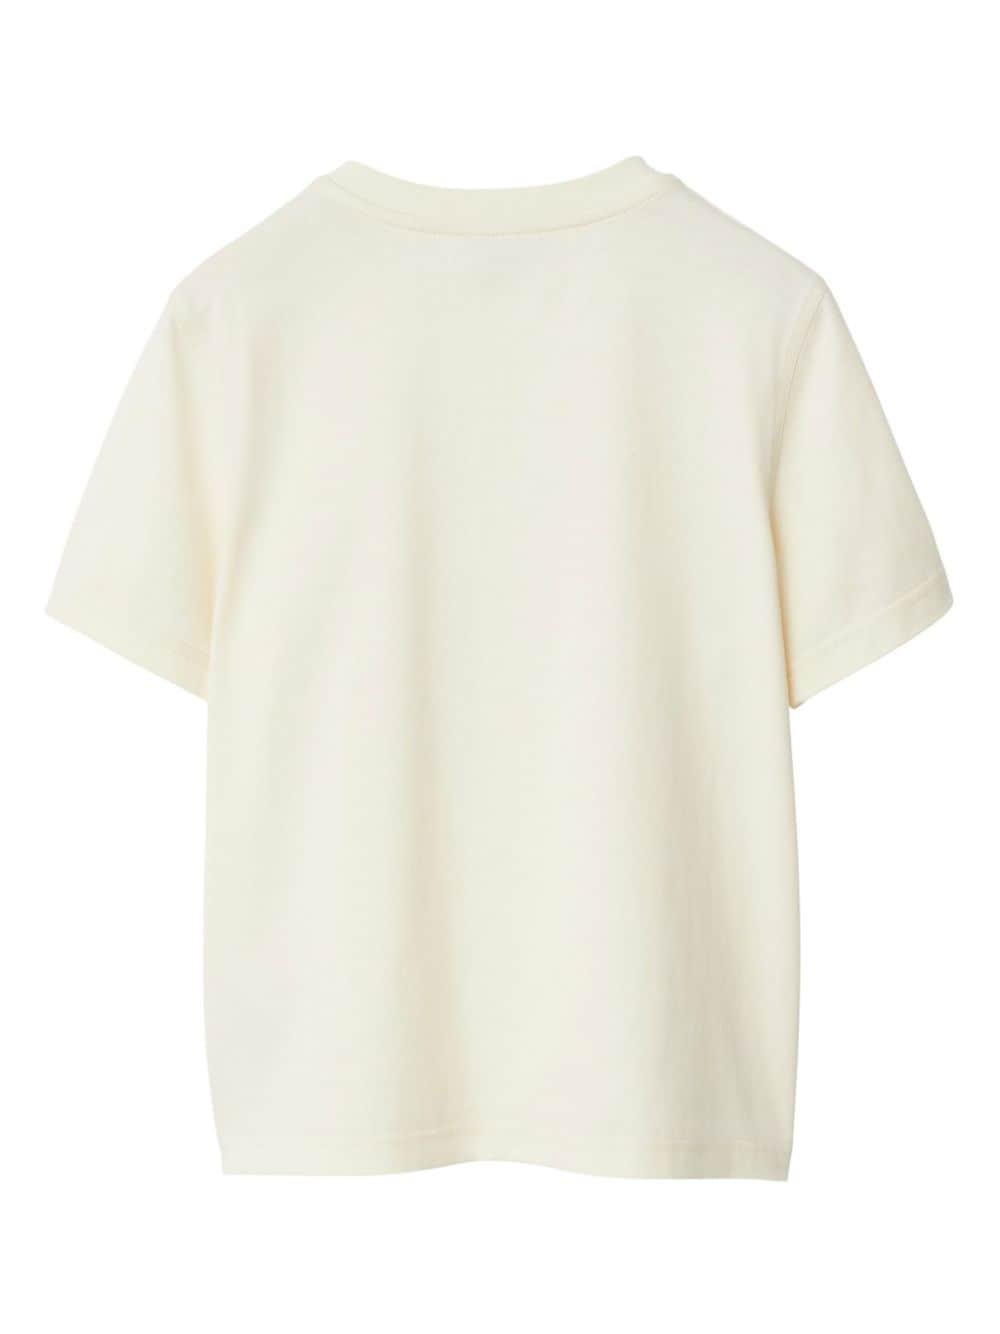 EKD cotton T-shirt<BR/><BR/><BR/><BR/>